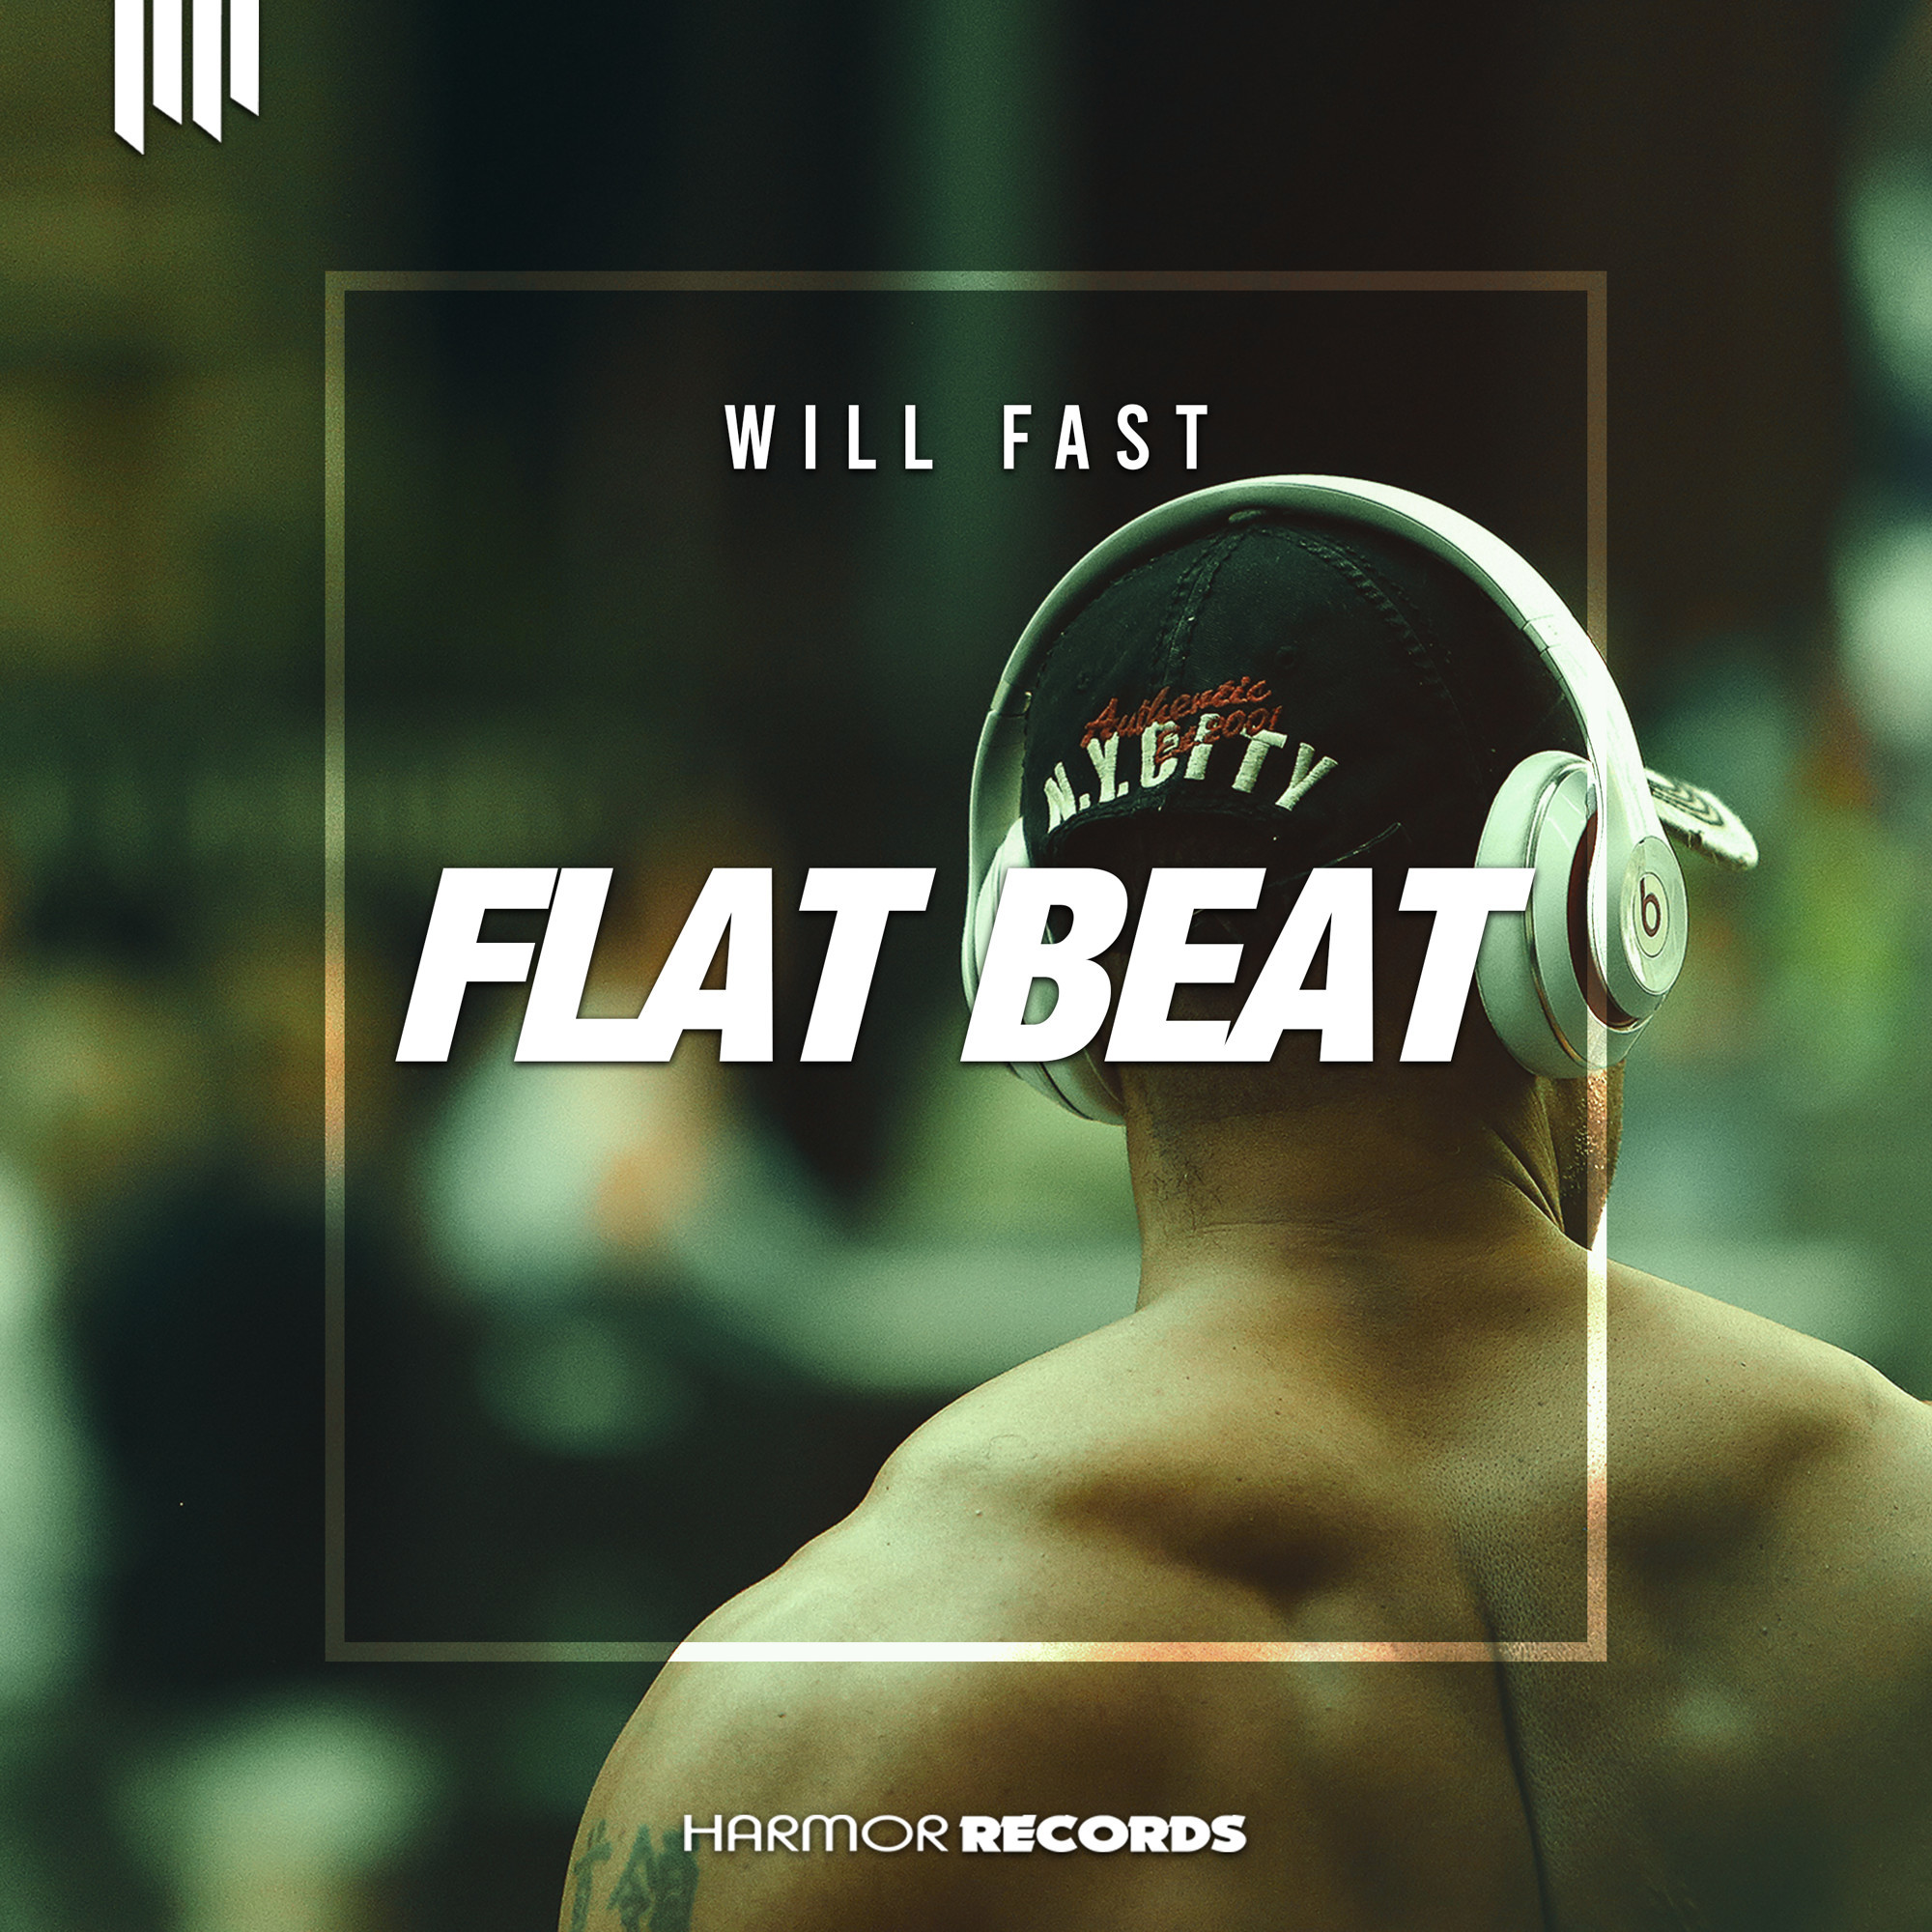 Flat fast. Flat Beat. Flat Beat картинка. Tracks Flat Beat. Флэт песня.